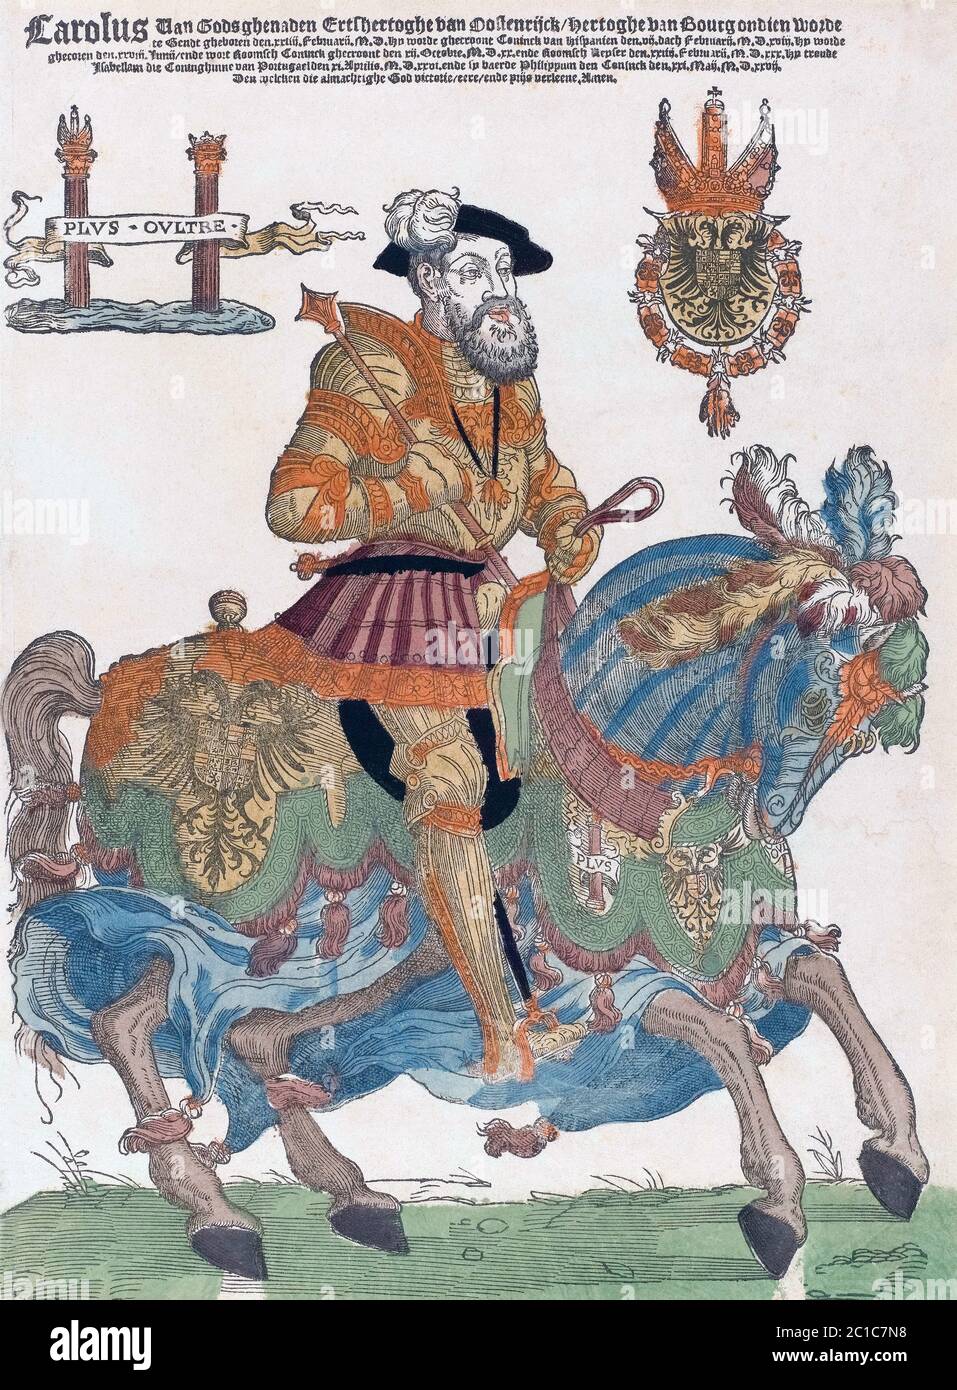 Charles V, 1500-1558. Empereur du Saint Empire romain. Carlos V. Roi d'Espagne comme Charles I. Carlos I. après un travail éventuellement par Cornelis Anthonisz. Banque D'Images